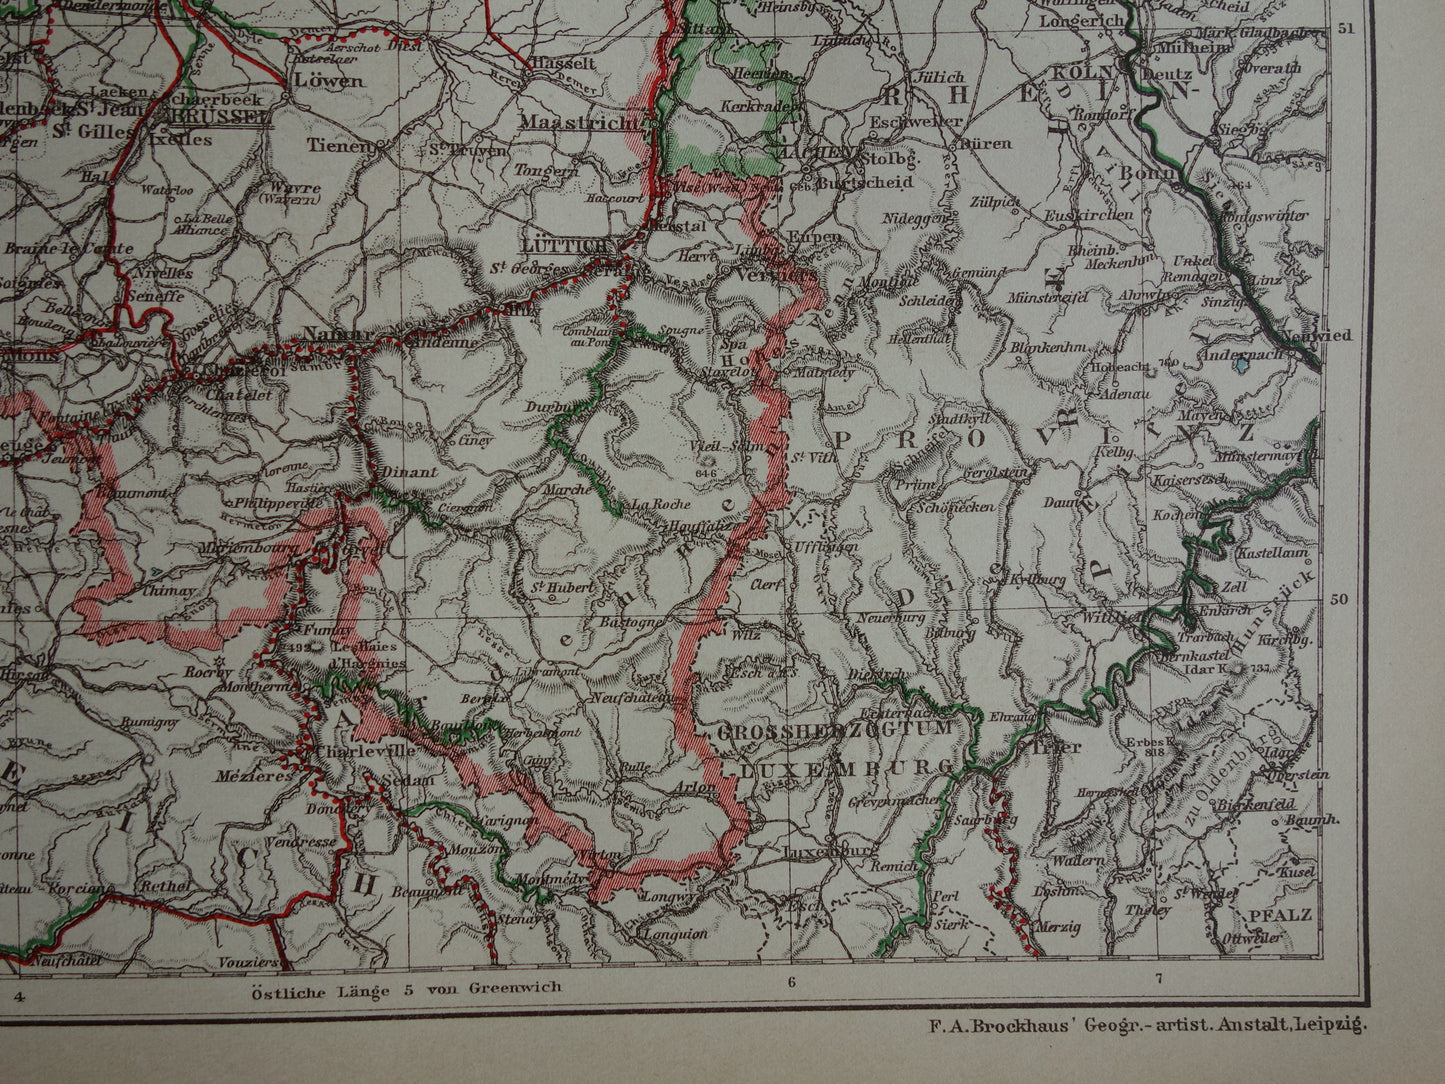 Oude kaart van waterwegen in NEDERLAND en BELGIË uit 1905 originele antieke landkaart Scheepvaart Kanalen Rivieren Maritieme kaarten